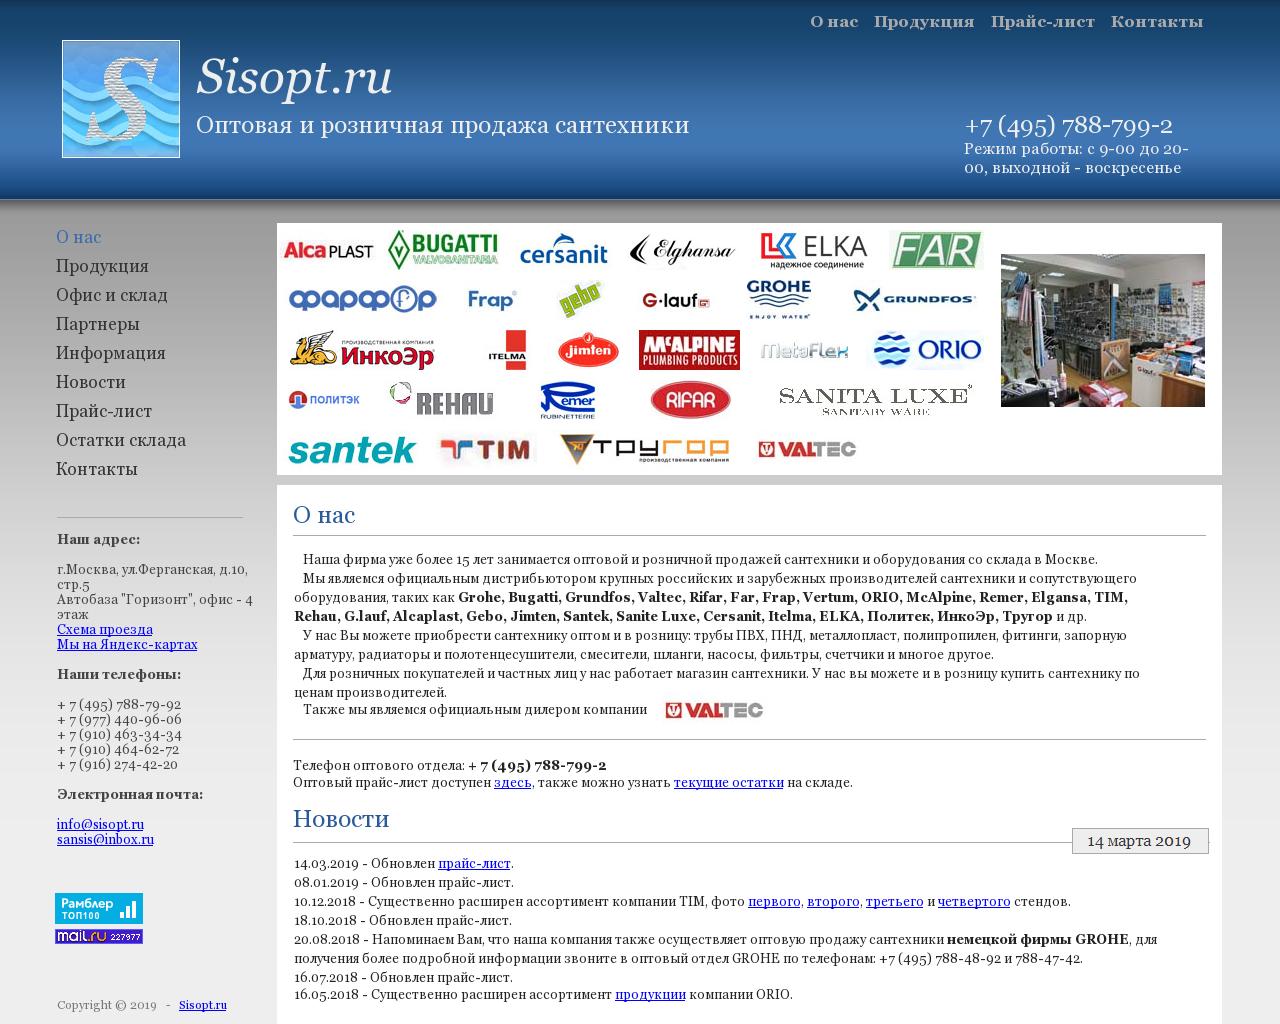 Изображение сайта sisopt.ru в разрешении 1280x1024